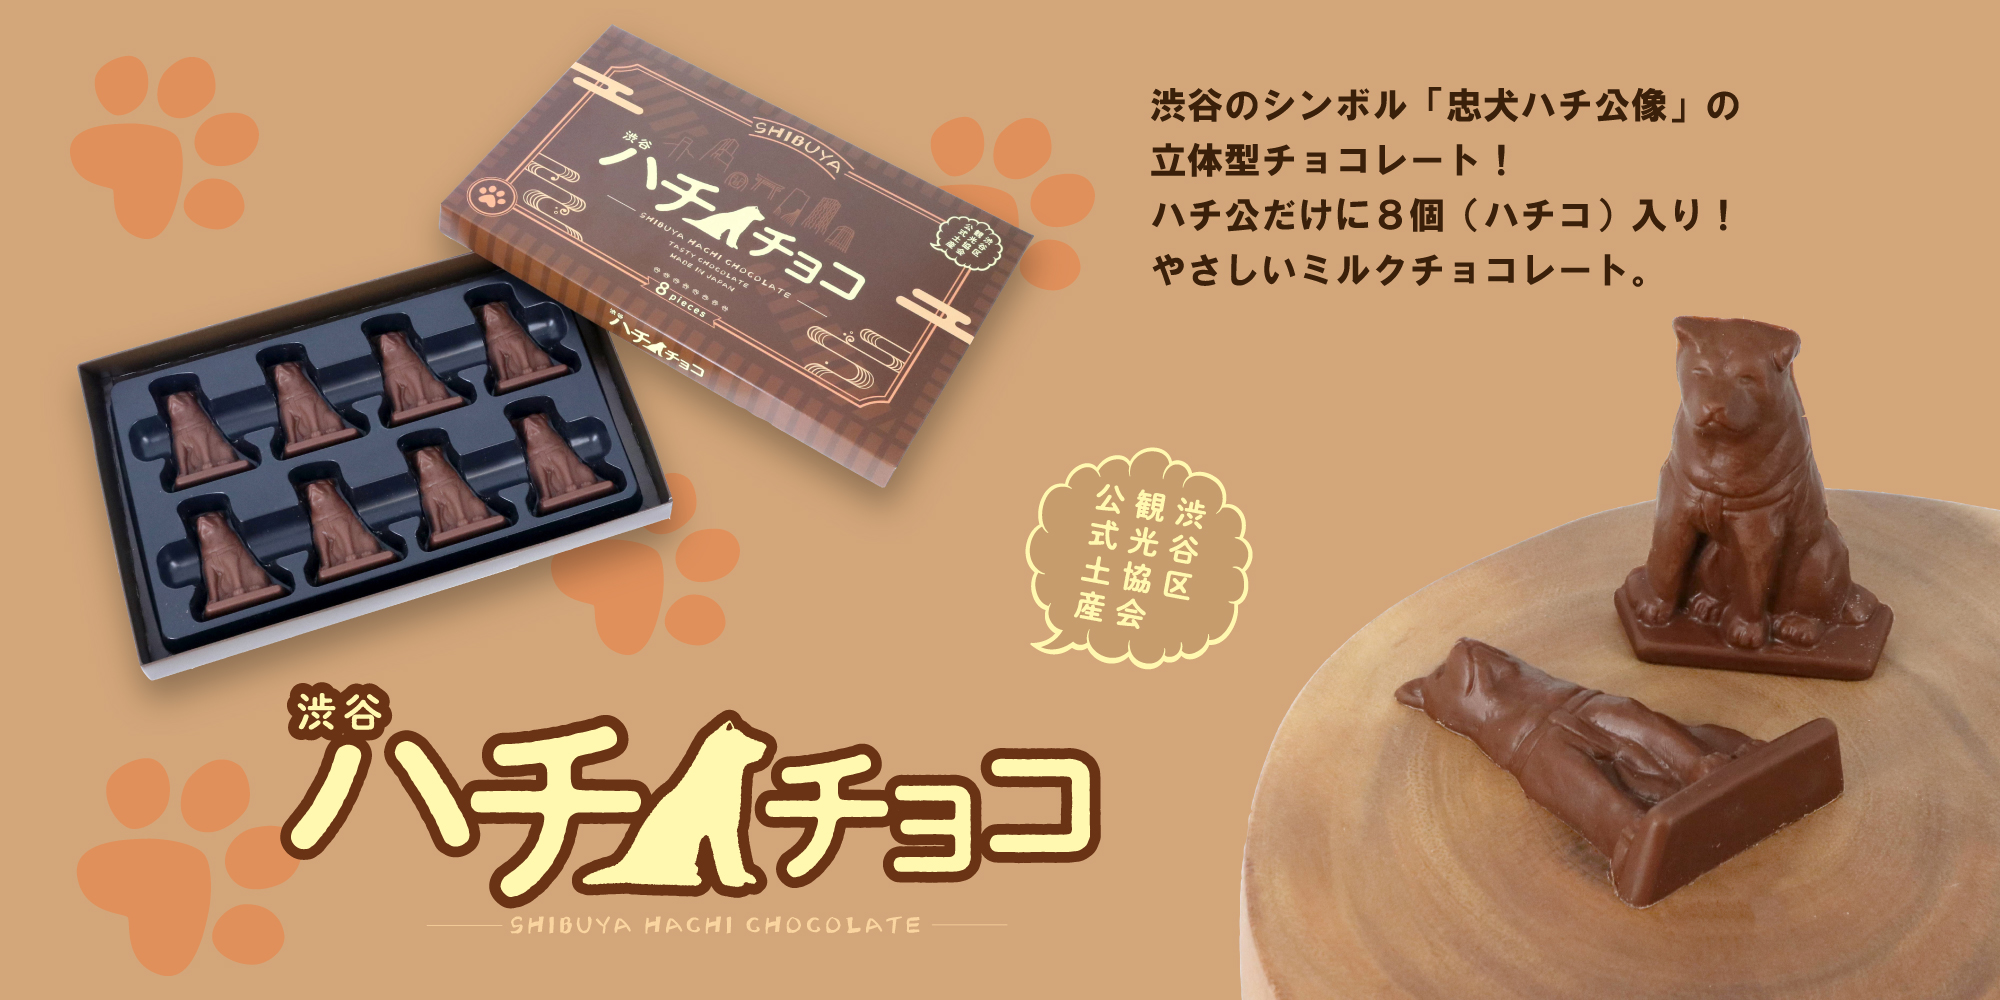 ありそうでなかった渋谷のシンボル「忠犬ハチ公像」のチョコレート 渋谷 ハチチョコ